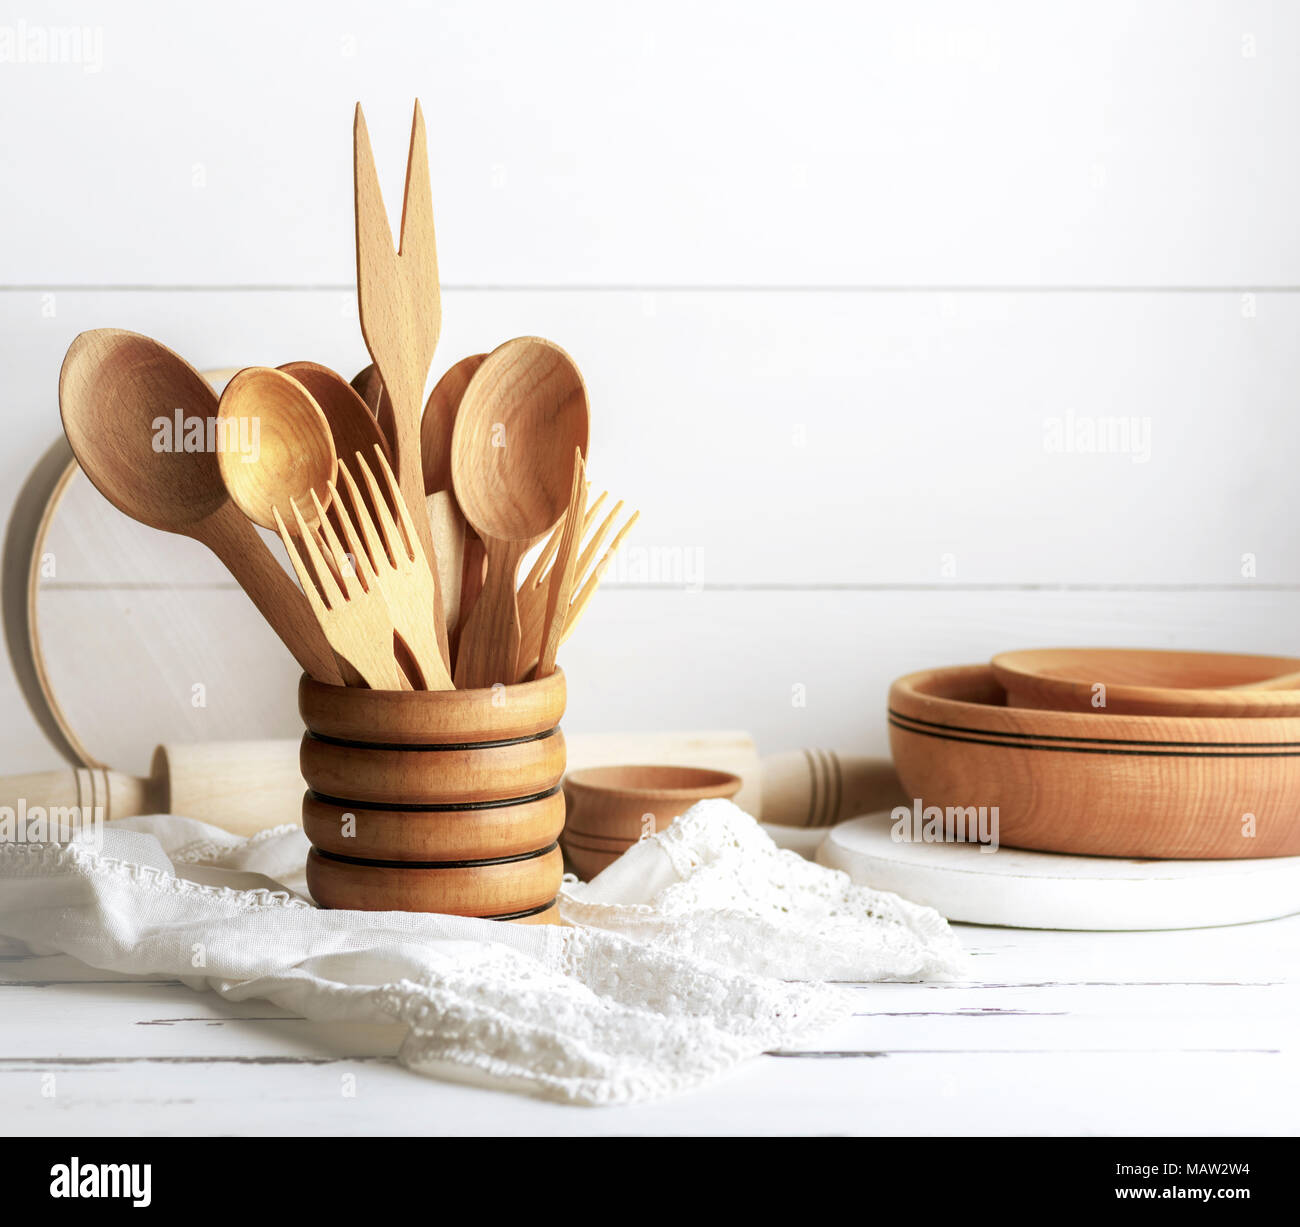 Verschiedene Gegenstände aus Holz in einem hölzernen Becher, Löffel, Gabeln, Nudelholz, Teller und ein Sieb auf einem weißen Tisch Stockfoto